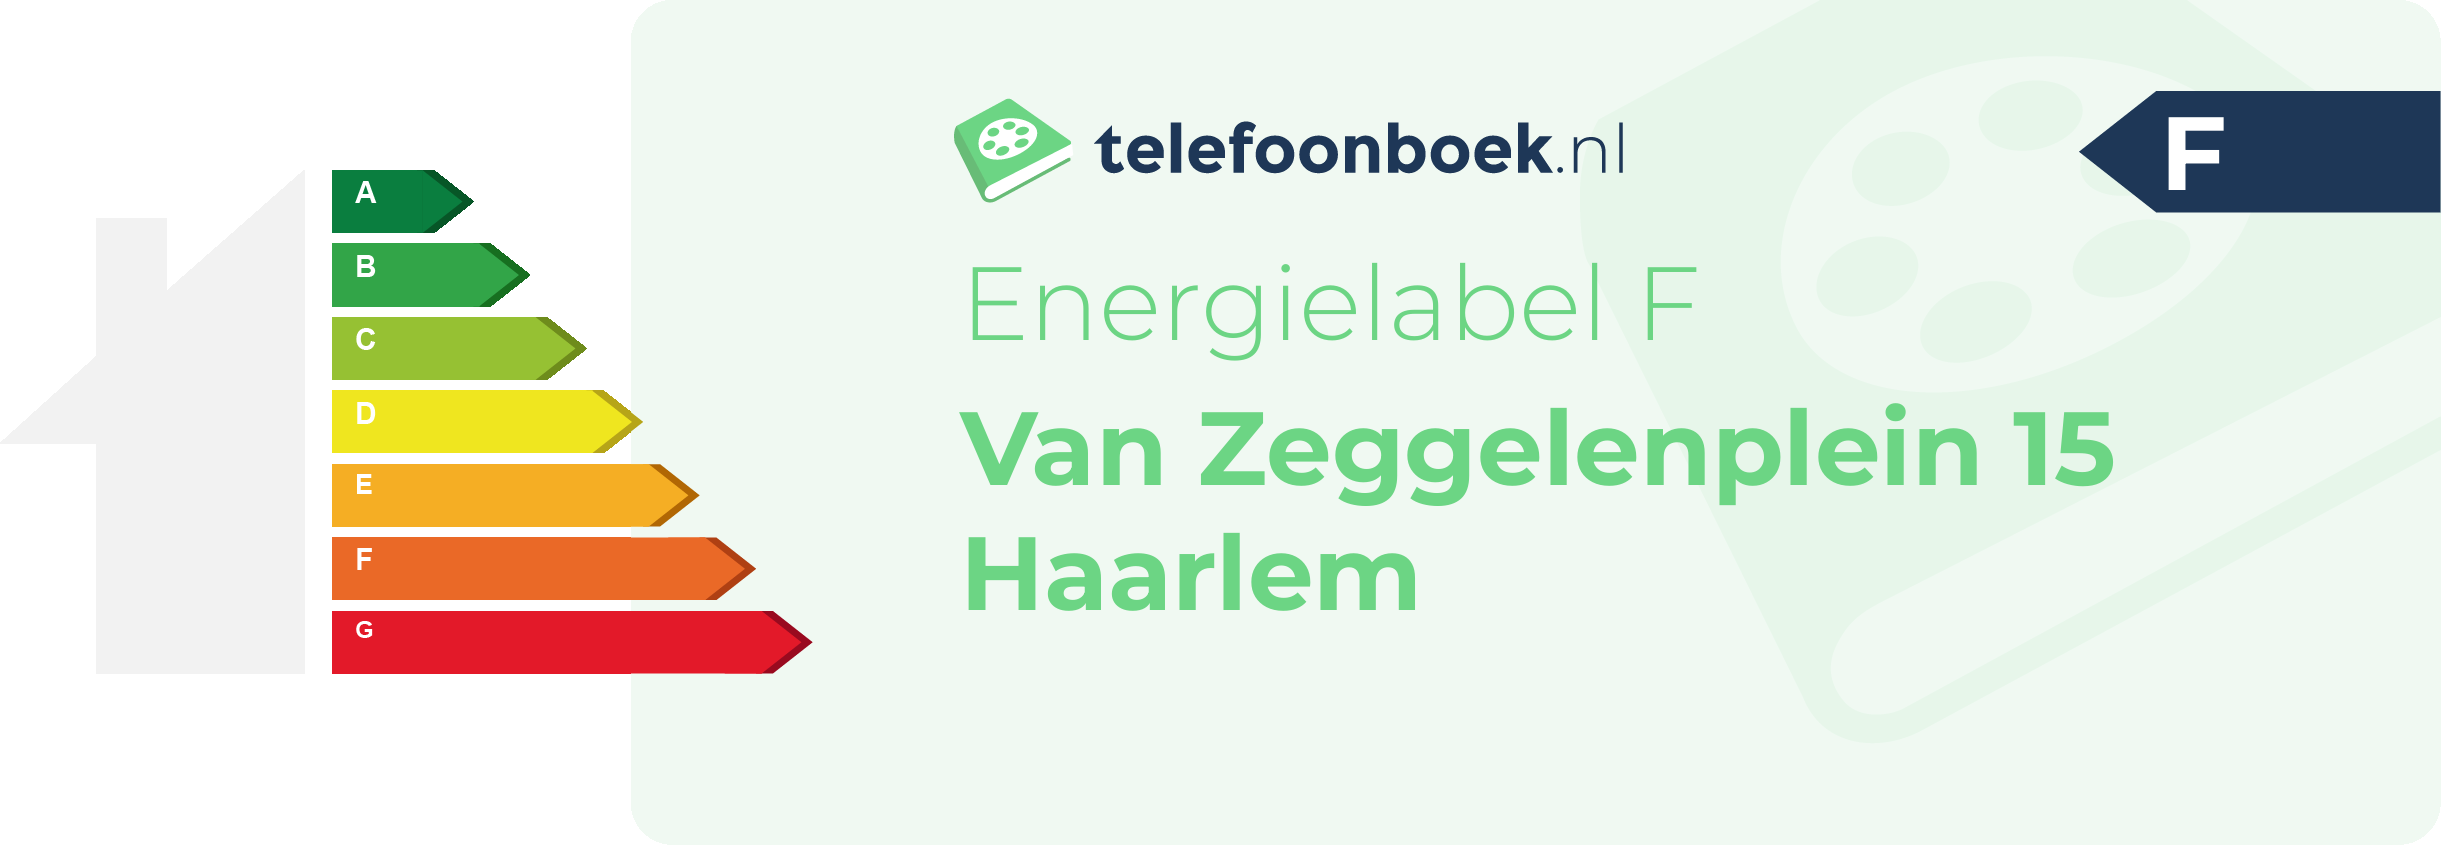 Energielabel Van Zeggelenplein 15 Haarlem